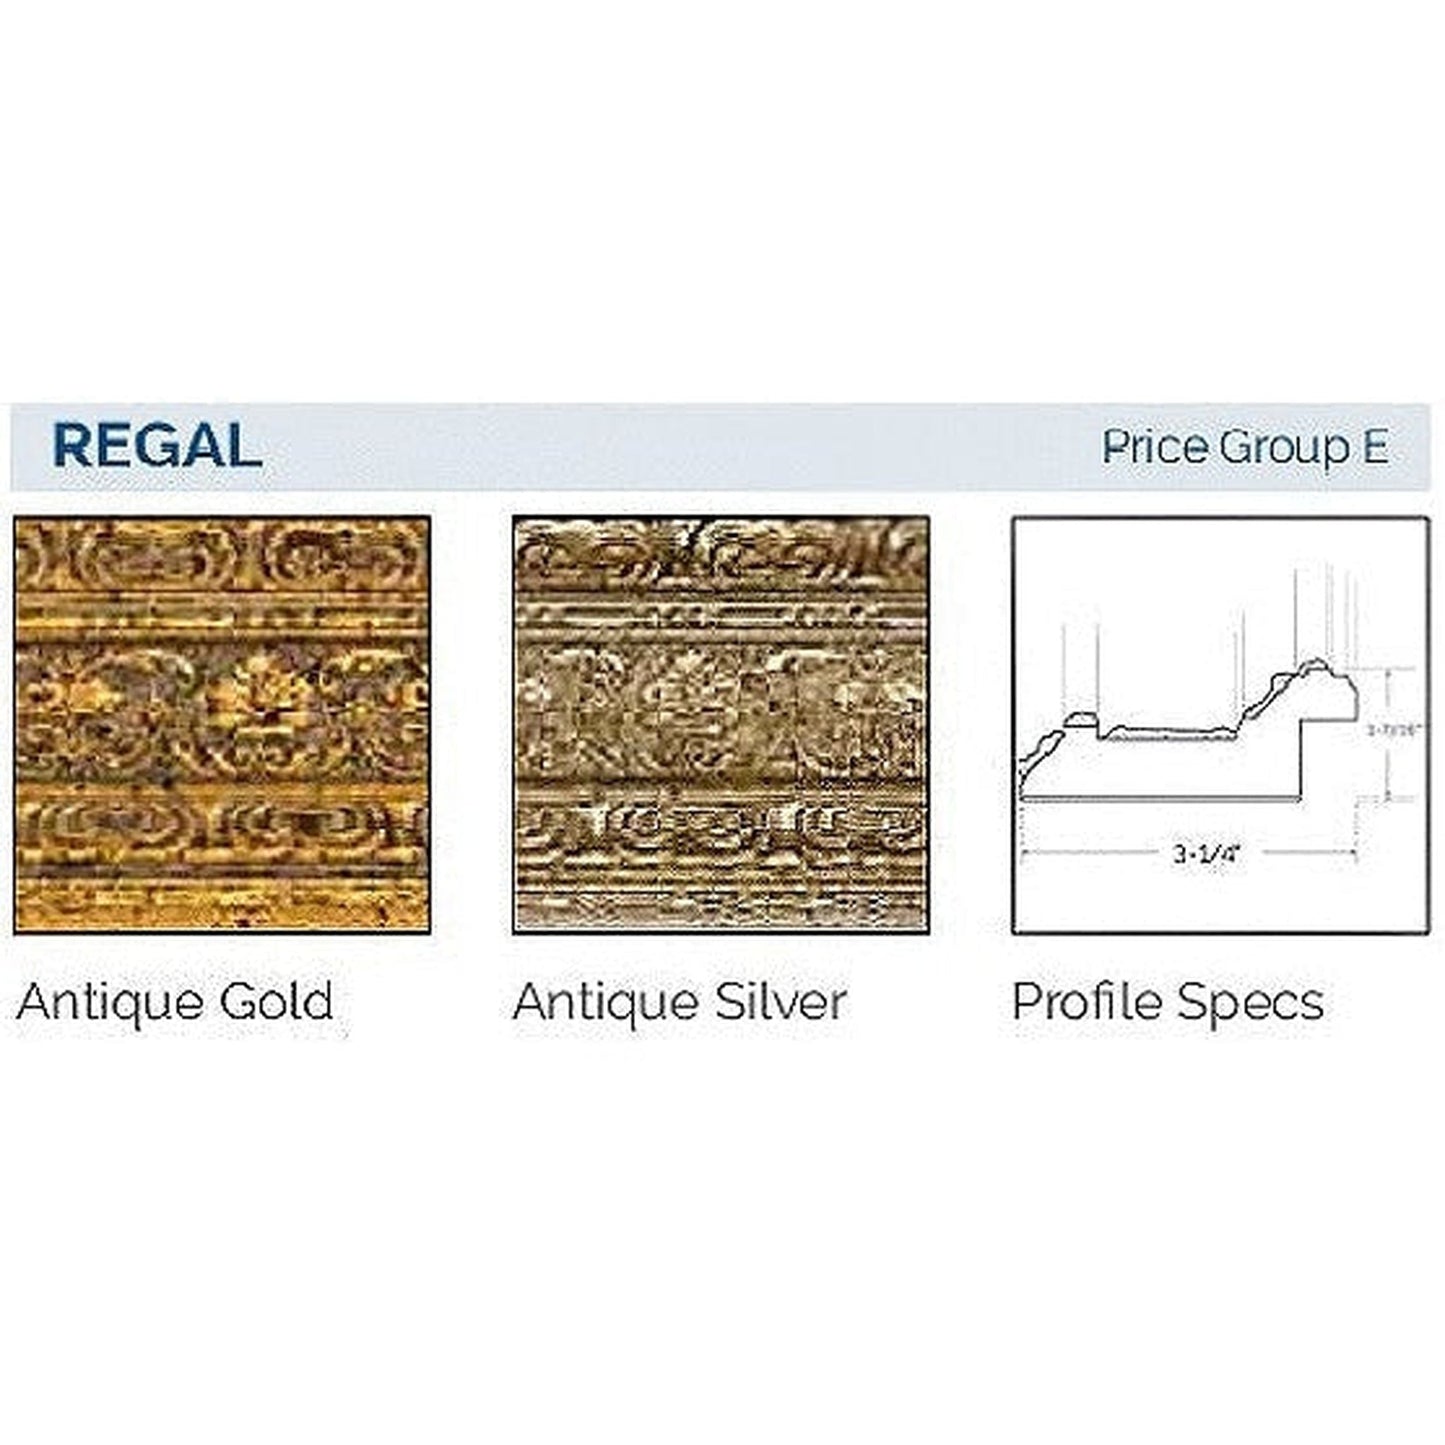 Afina Signature 58" x 30" Regal Antique Gold Recessed Four Door Medicine Cabinet With Beveled Edge Mirror